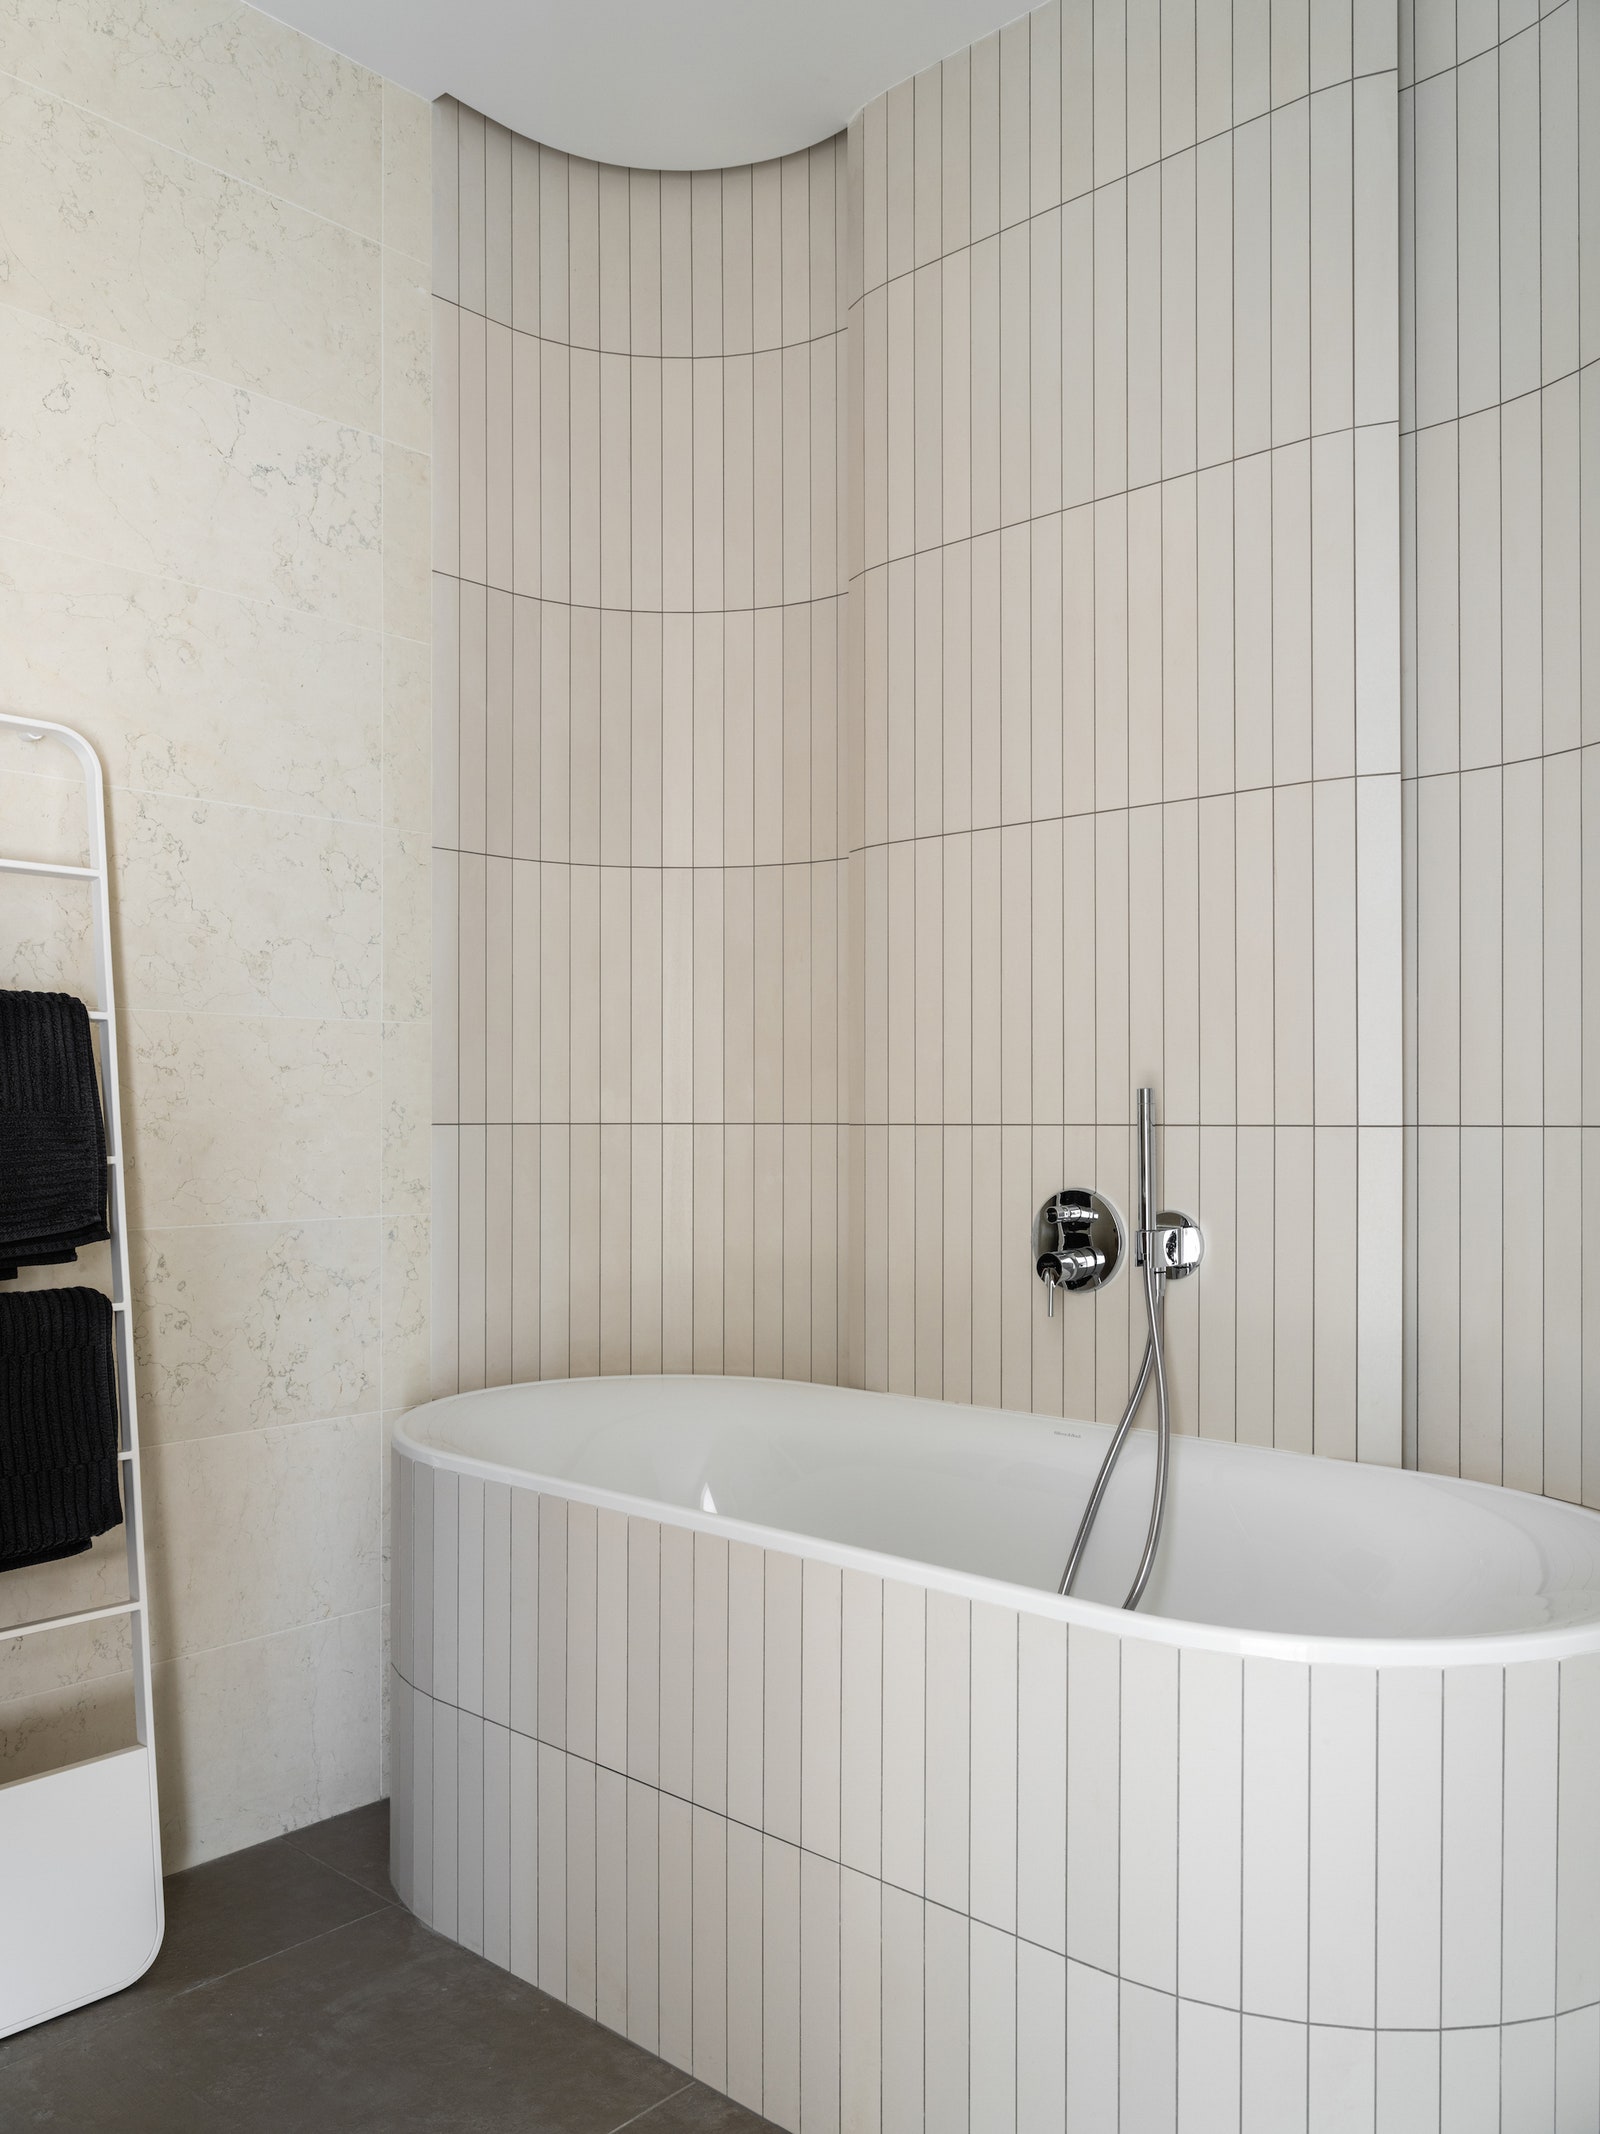 Основная ванная комната. Стены отделаны мрамором Biancone и плиткой Mutina. Полотенцесушитель Agape.